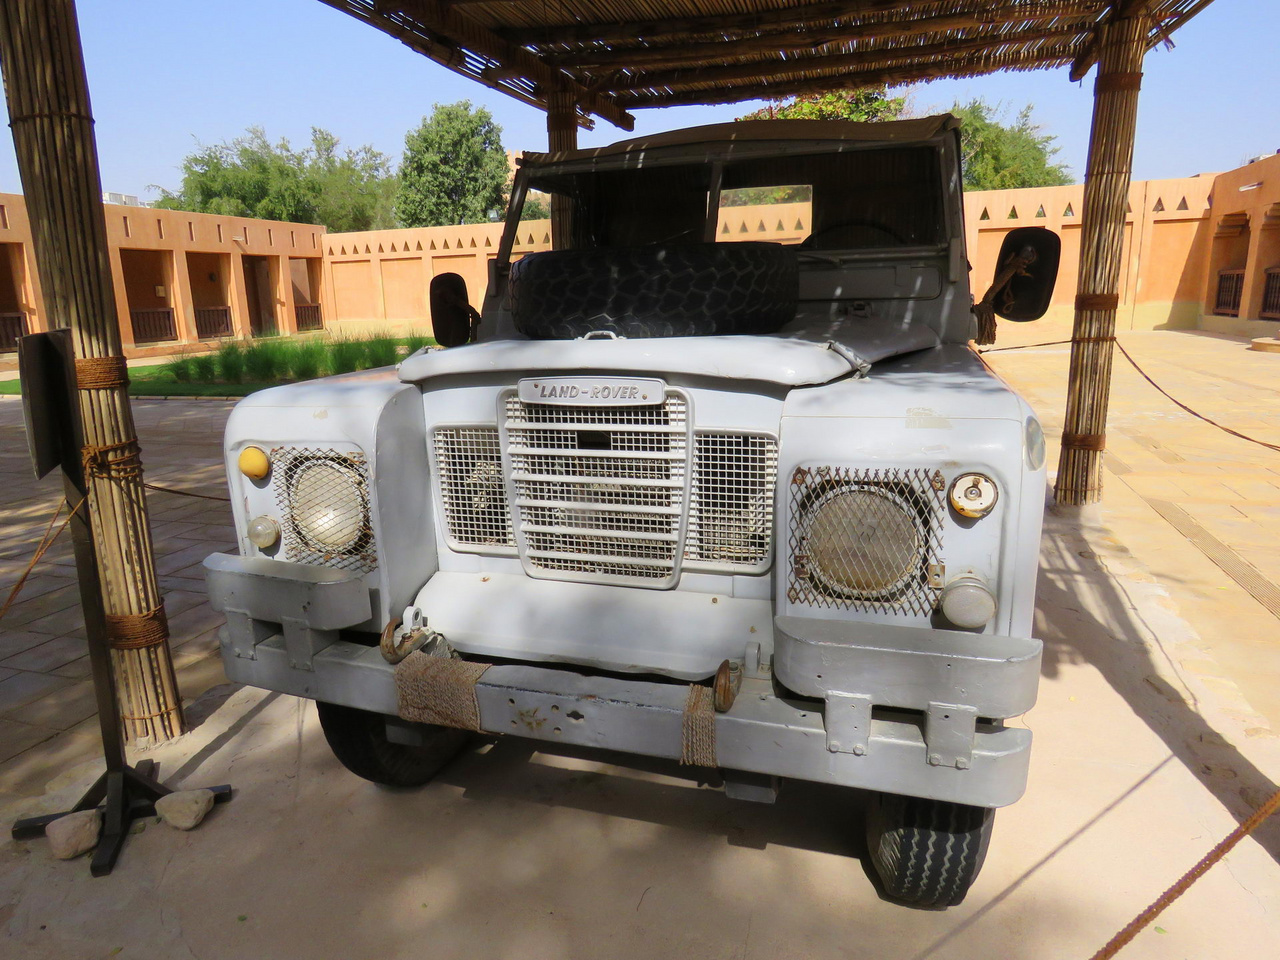 Muzeális Land Rover az Al Ain-i palotában. Fél évszázada a legendás Zayed sejk ezzel látogatta sorba a vele szövetséges beduin törzseket. 